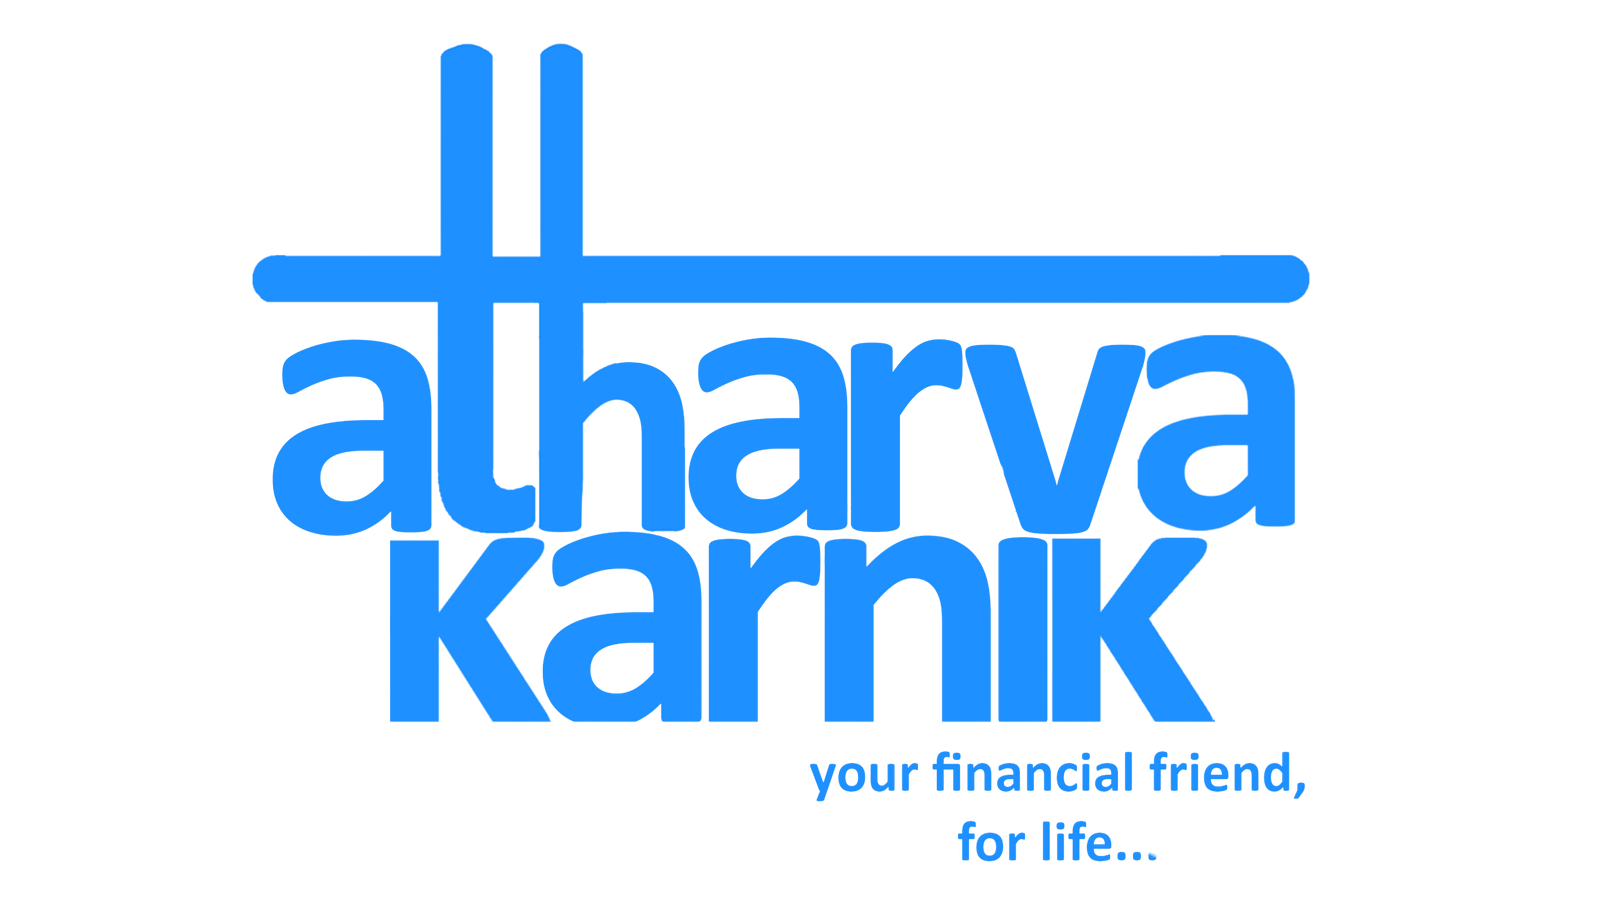 Atharva Bio Products